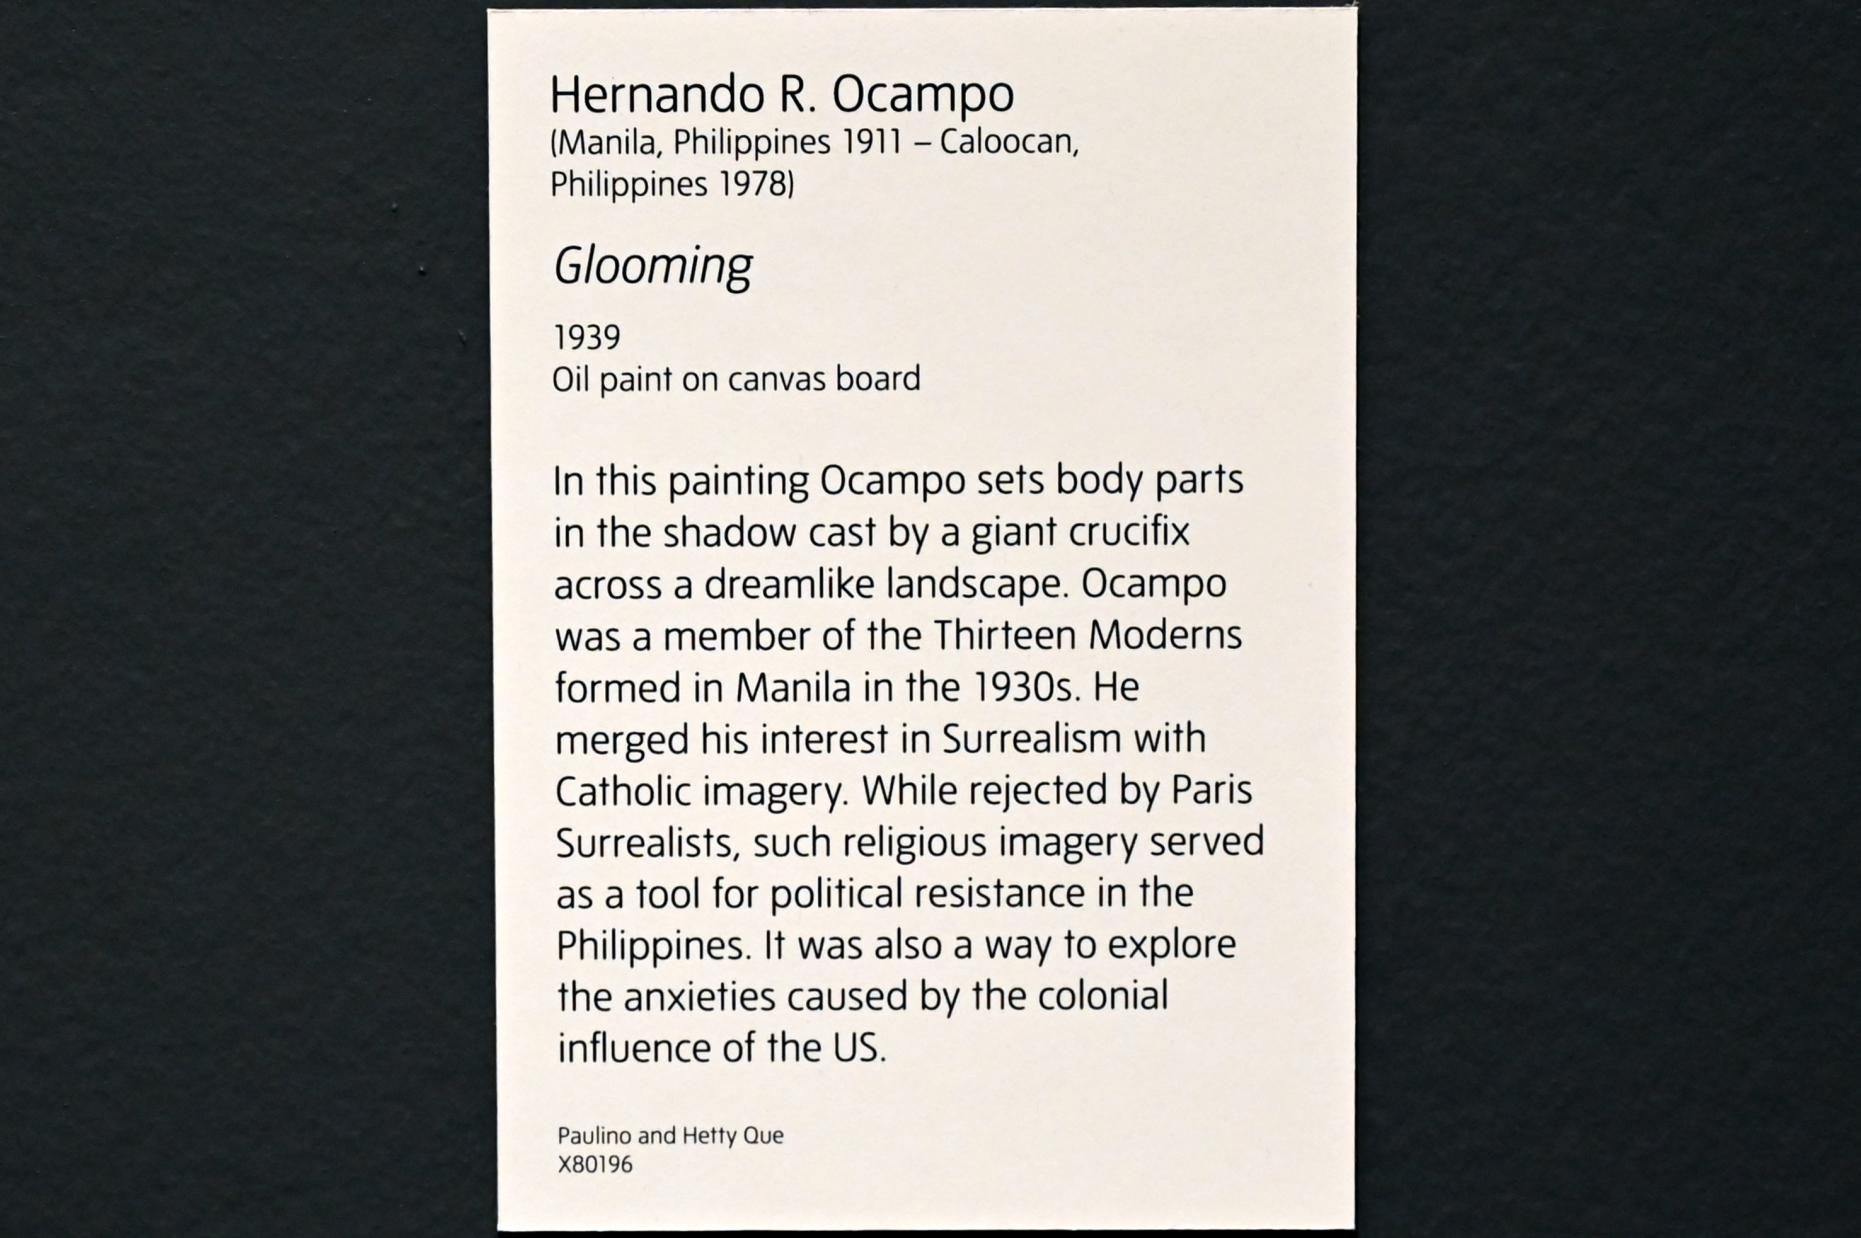 Hernando R. Ocampo (1939), Düster, London, Tate Modern, Ausstellung "Surrealism Beyond Borders" vom 24.02.-29.08.2022, Saal 3, 1939, Bild 2/2